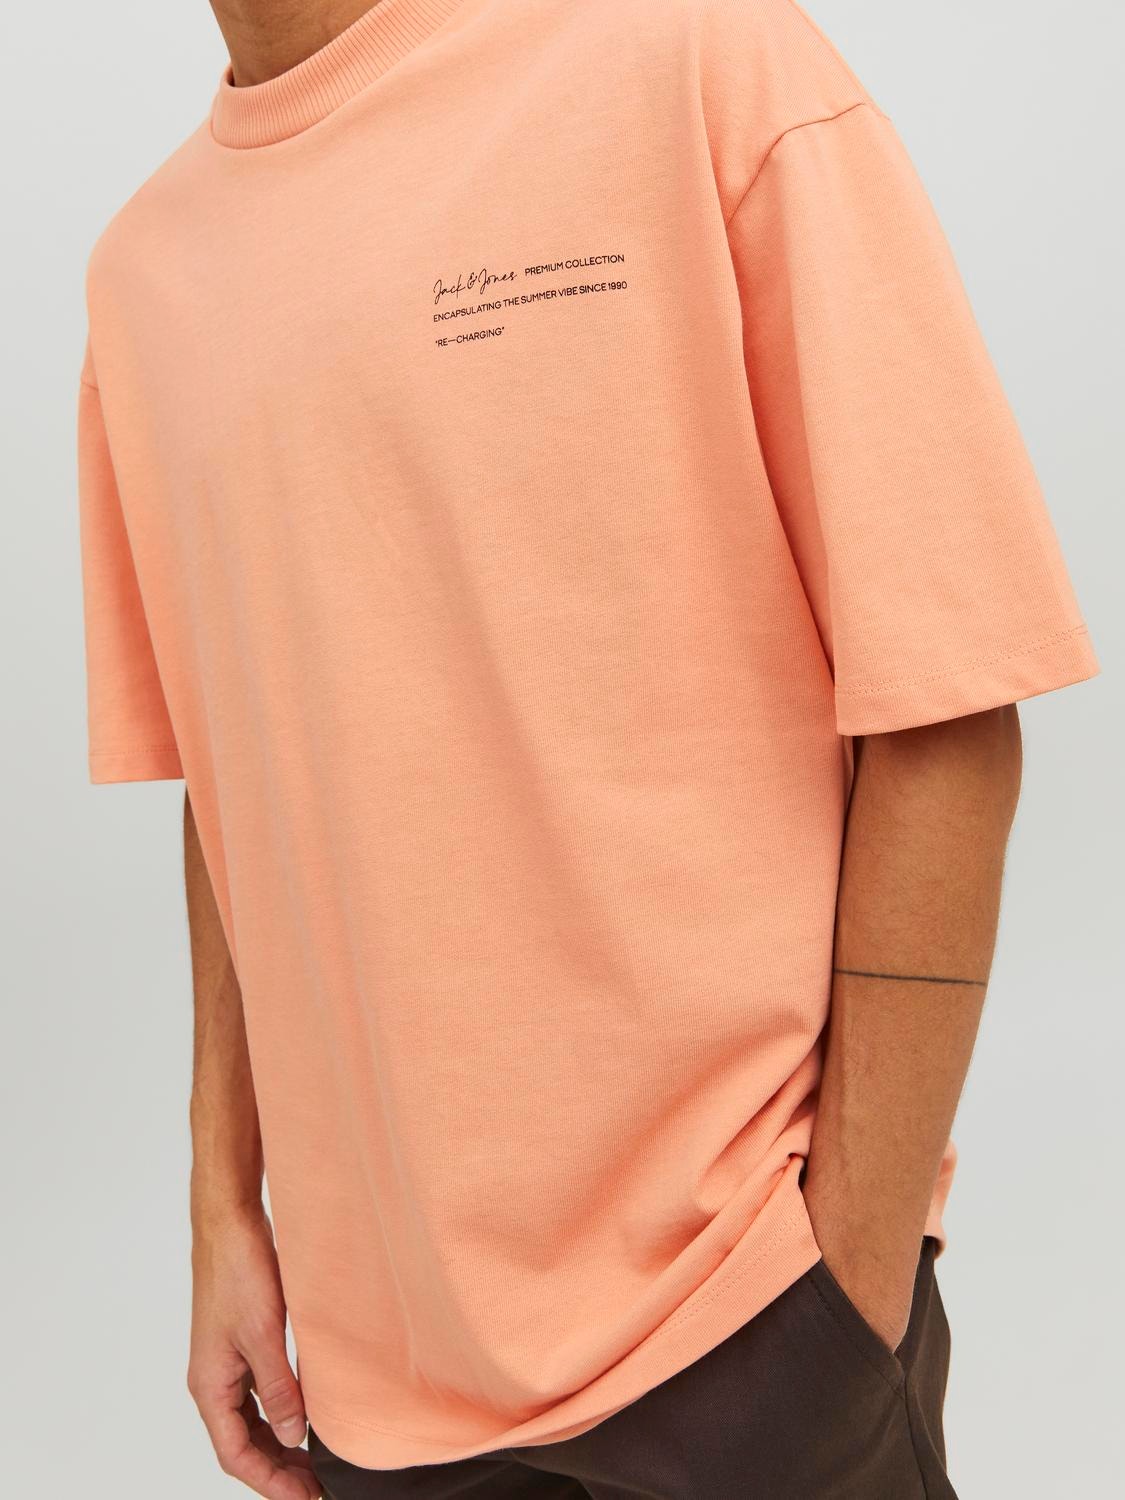 Jack & Jones Nadruk Okrągły dekolt T-shirt -Shrimp - 12236394